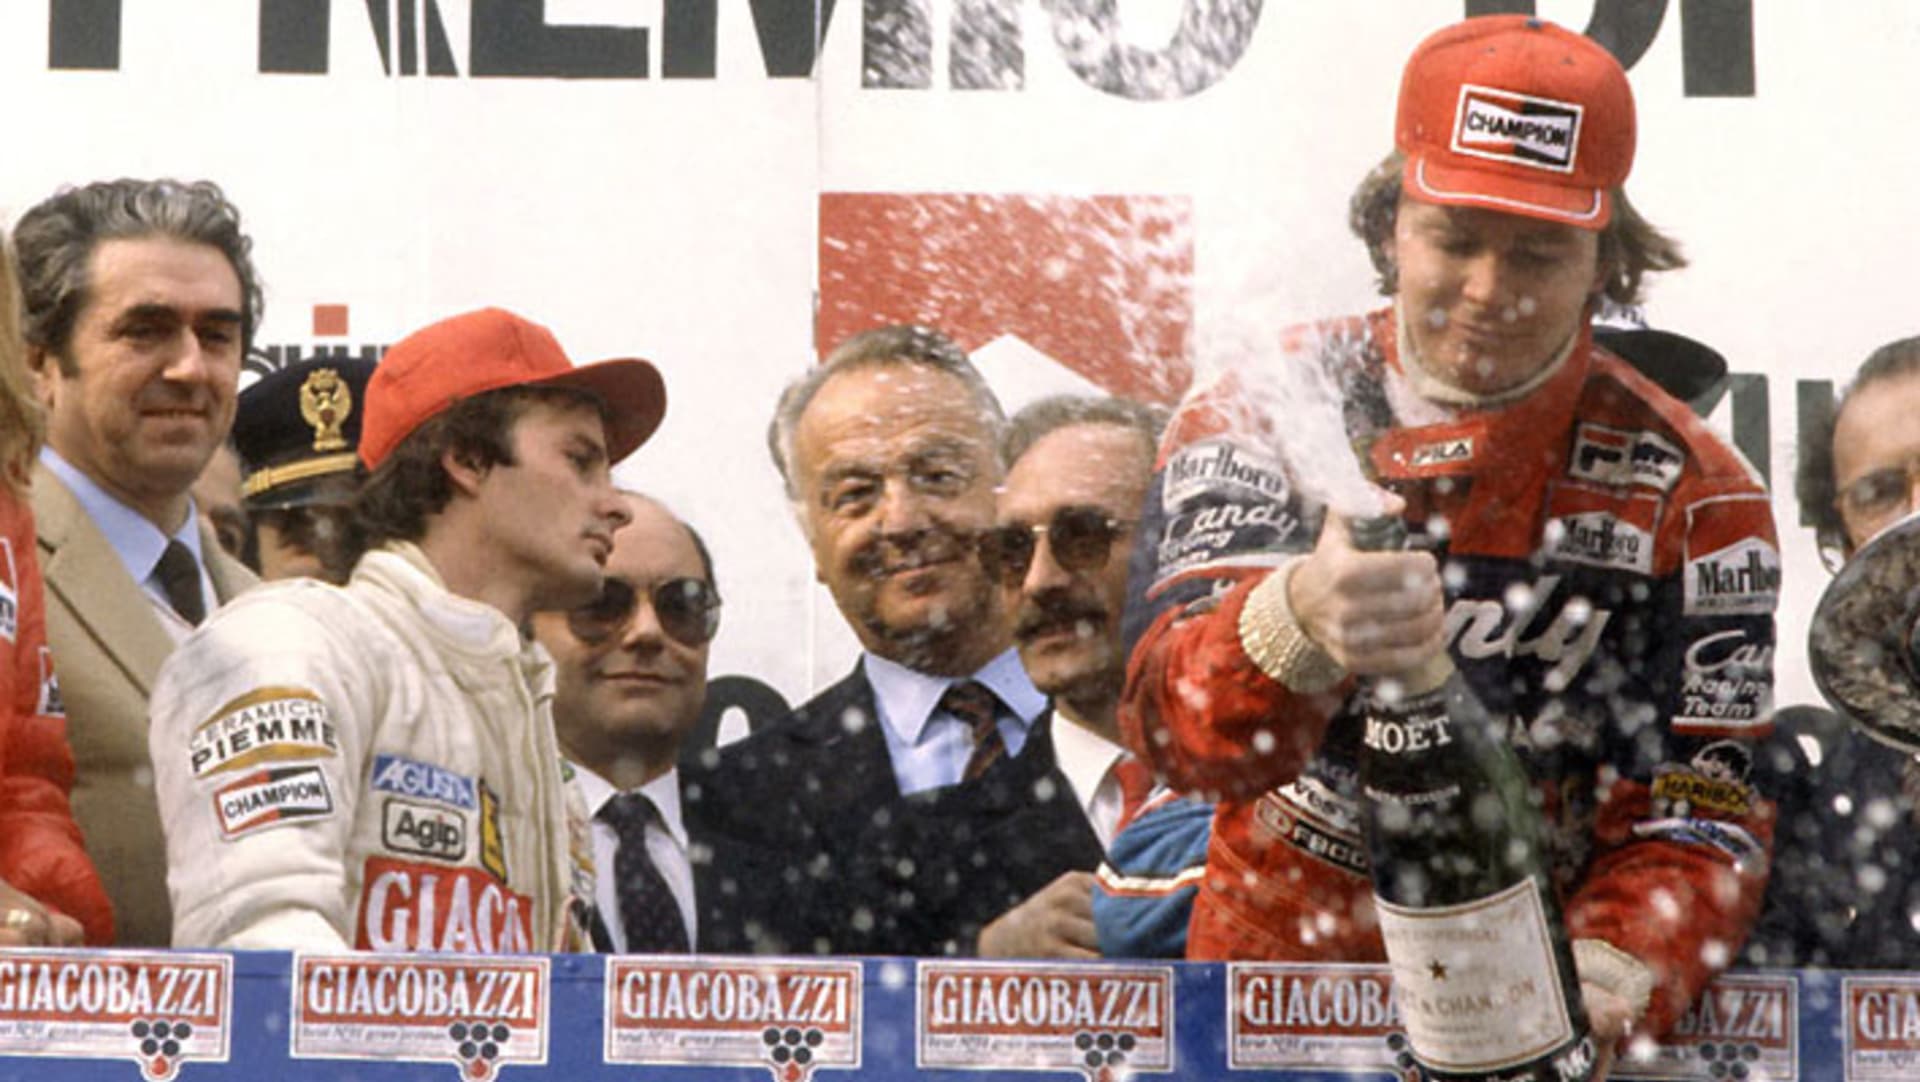 Zrazený Villeneuve na stupních vítězů Imole 14 dnů před osudnou nehodou. Vpravo oslavuje vítěz Pironi, který si však dlouhého života také neužil.